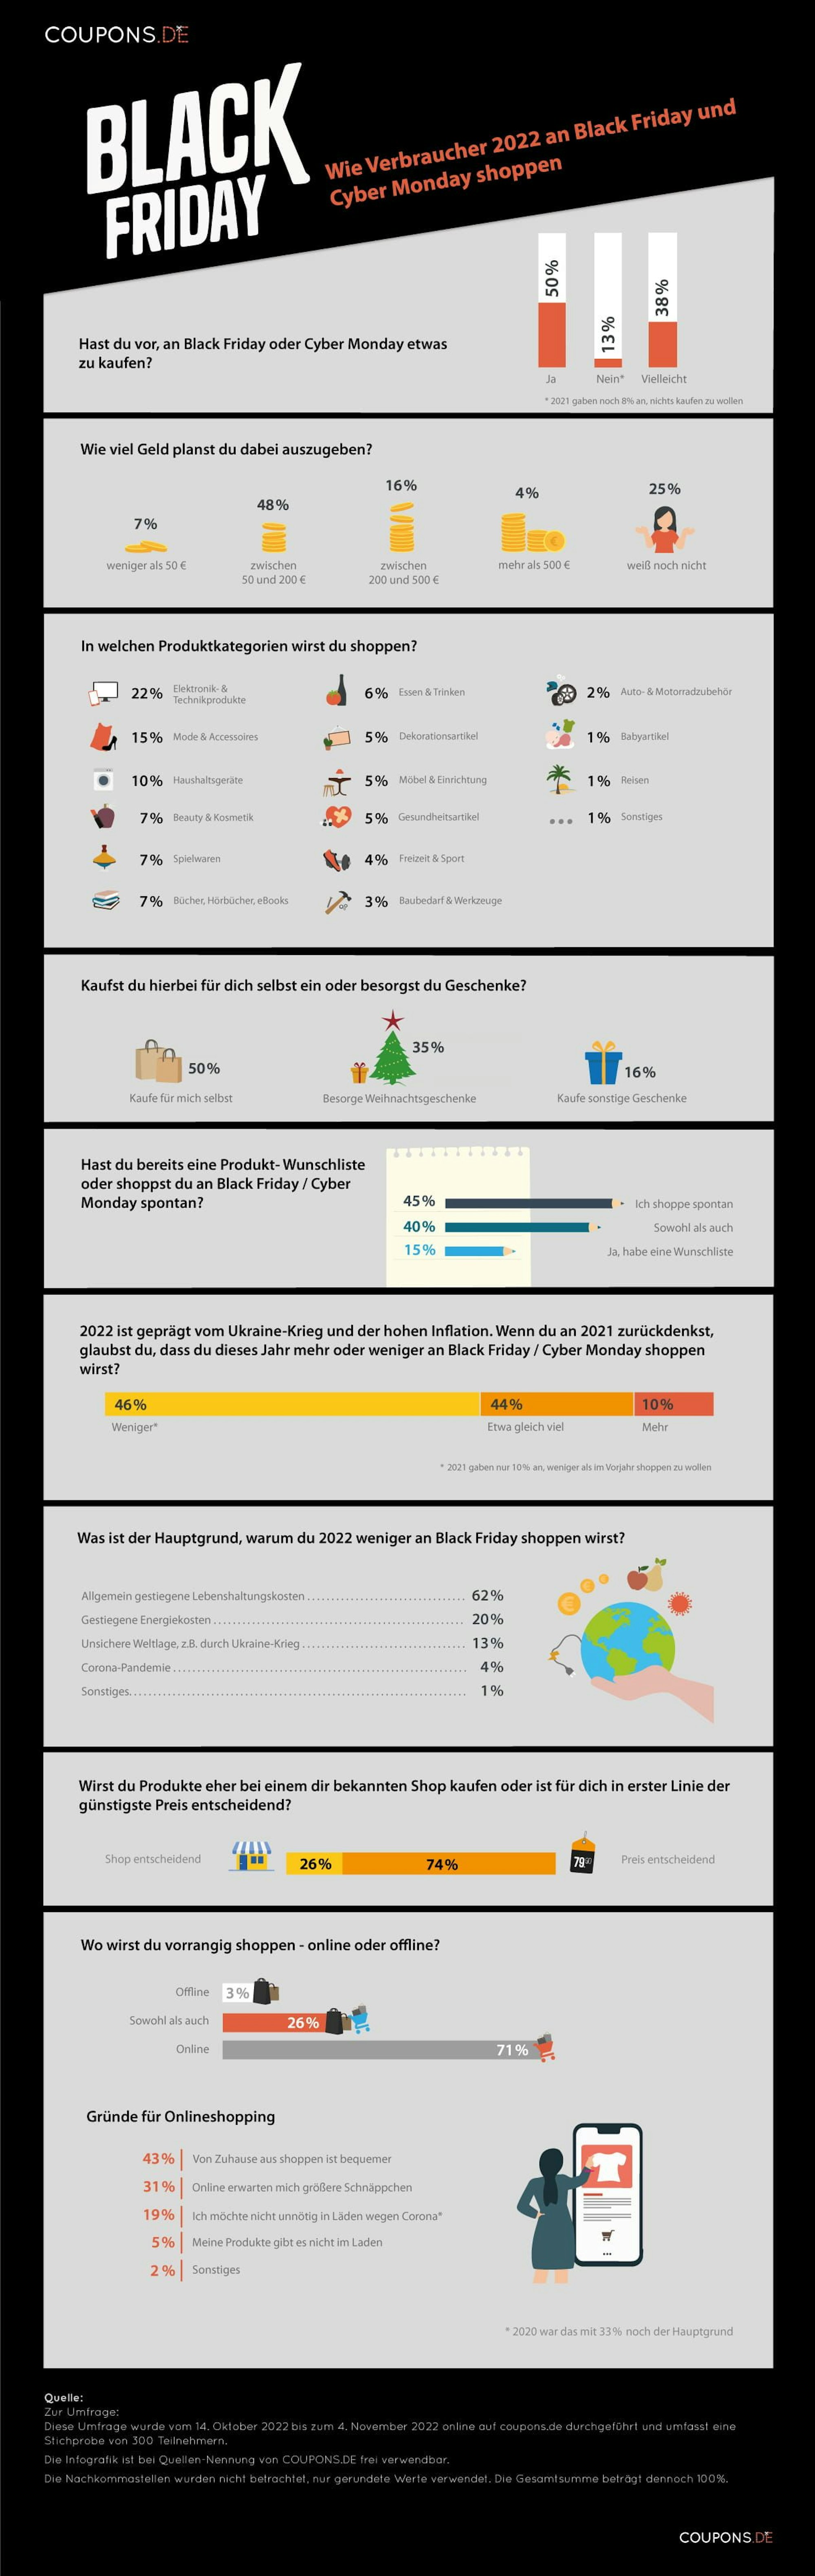 Infografik mit den Ergebnissen einer Umfrage von coupons.de zum Black Friday 2022.